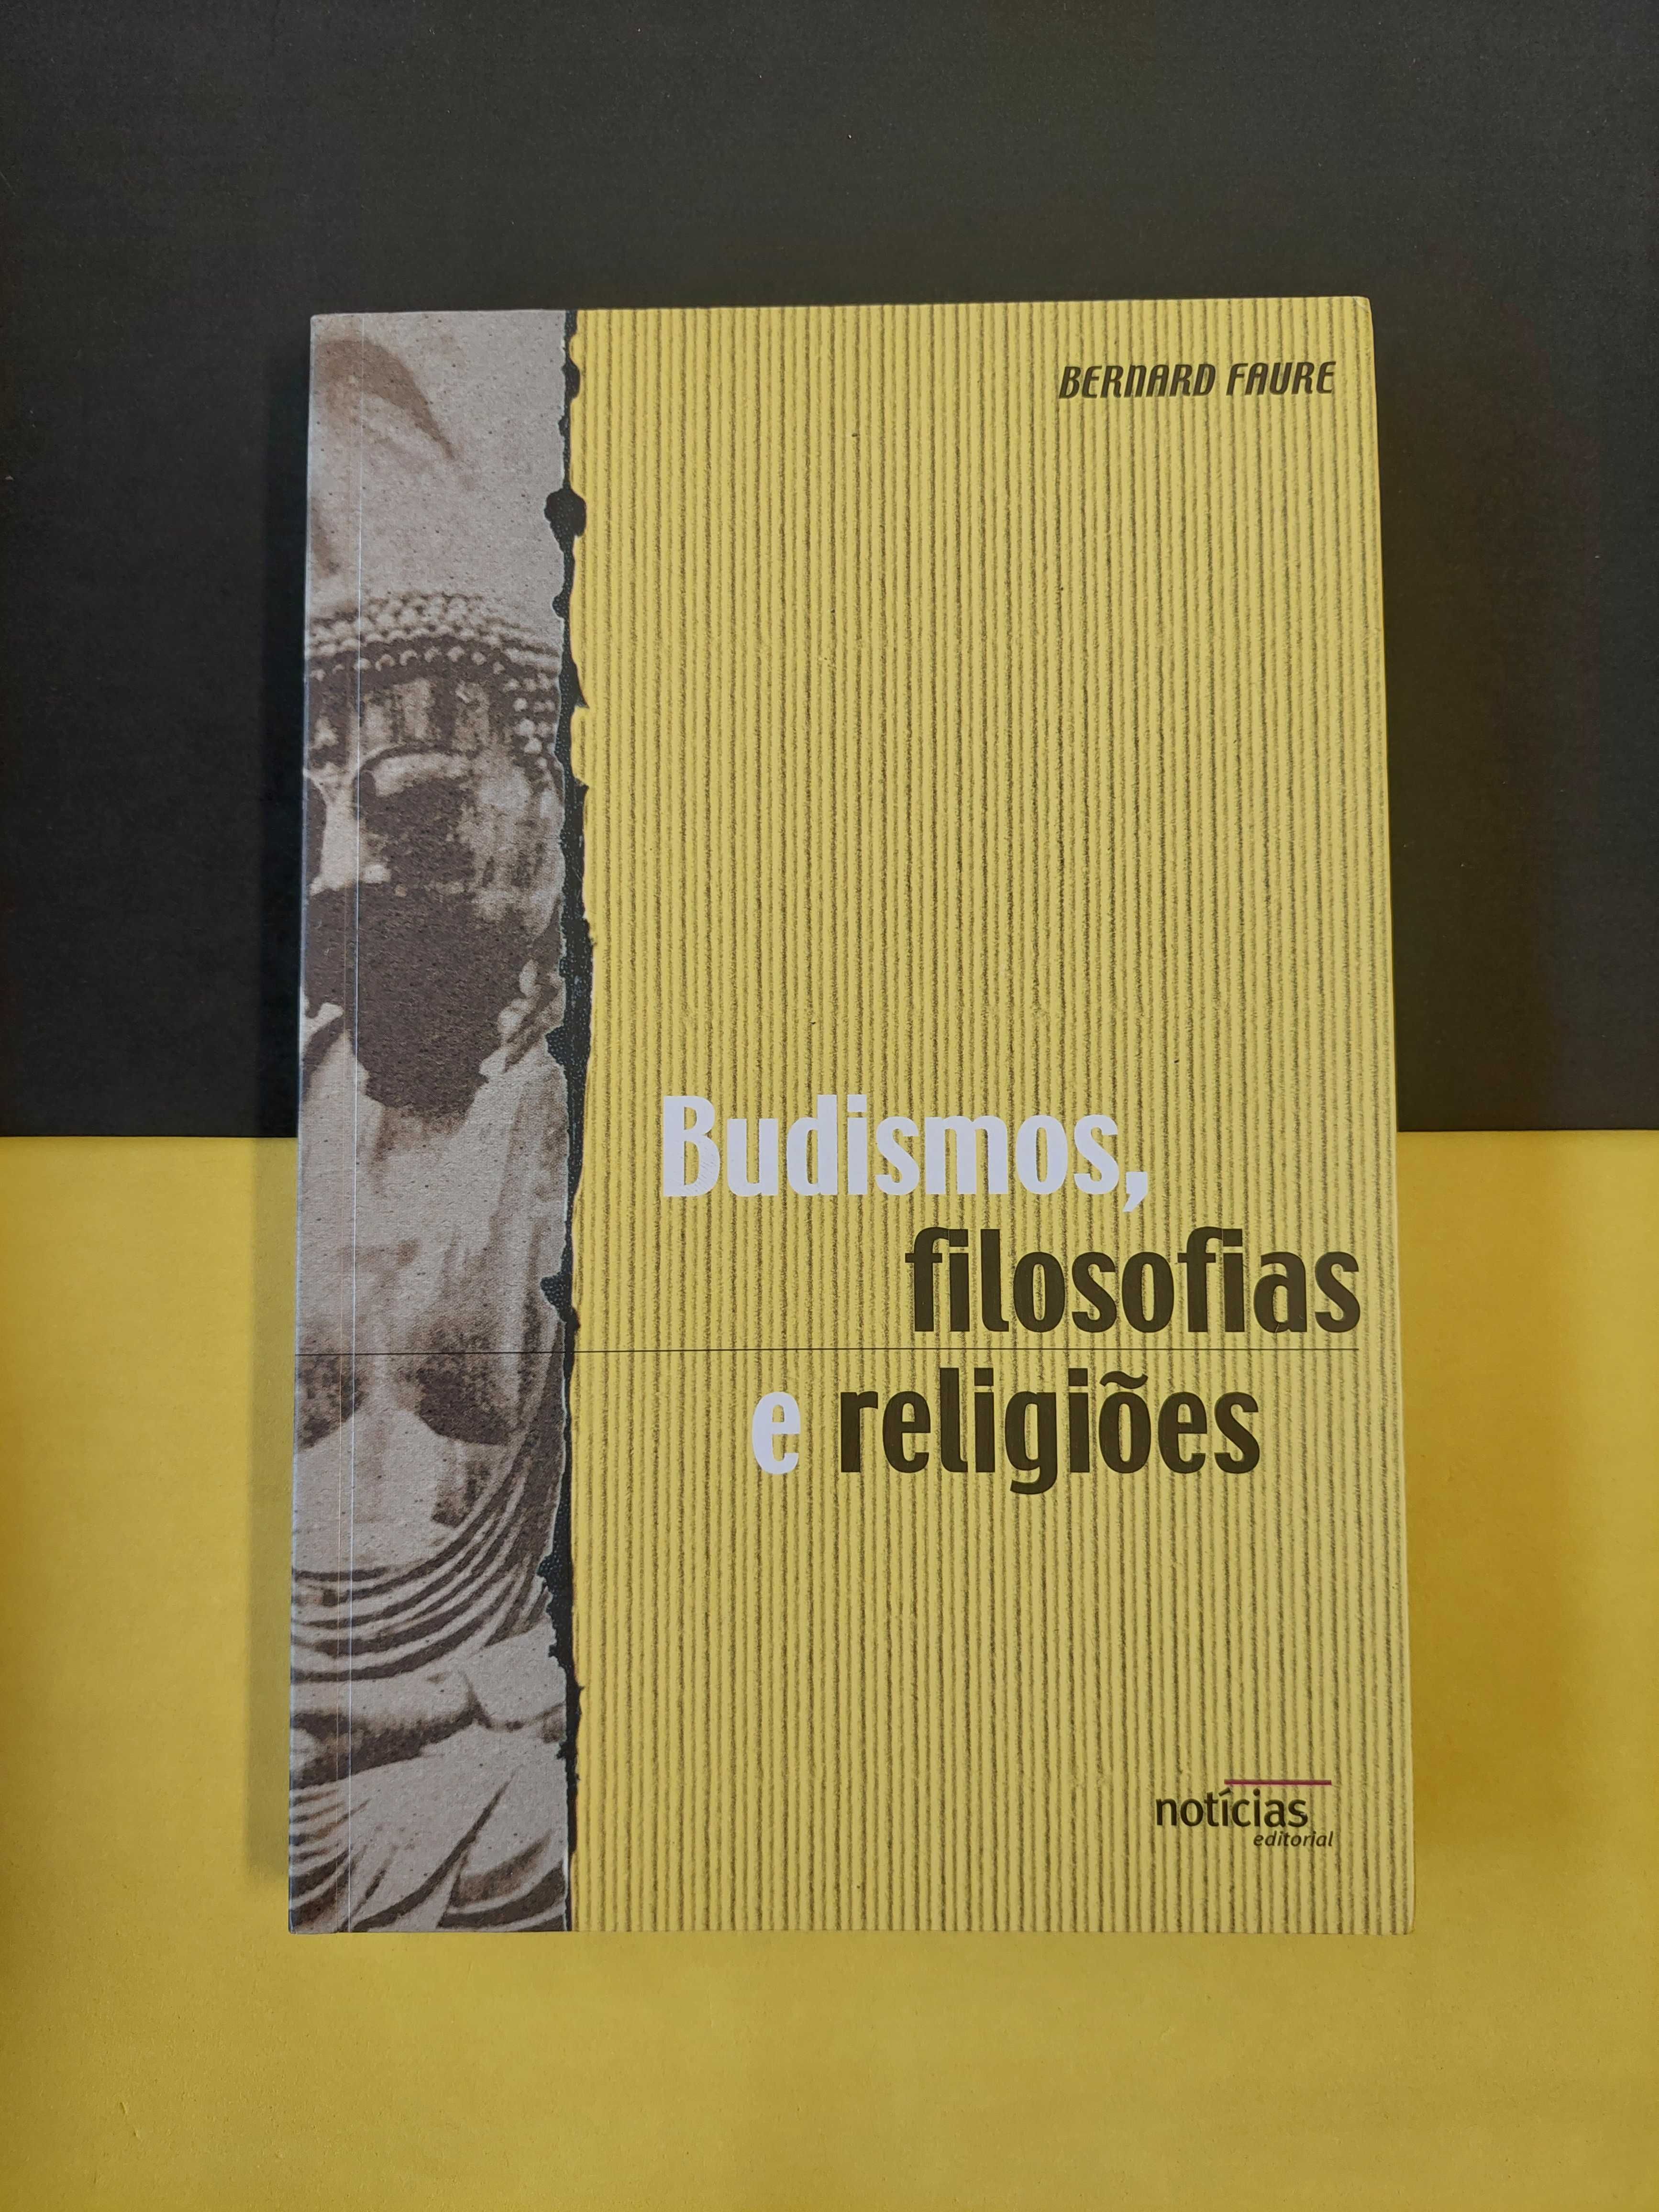 Bernard Faure - Budismos, filosofias e religiões